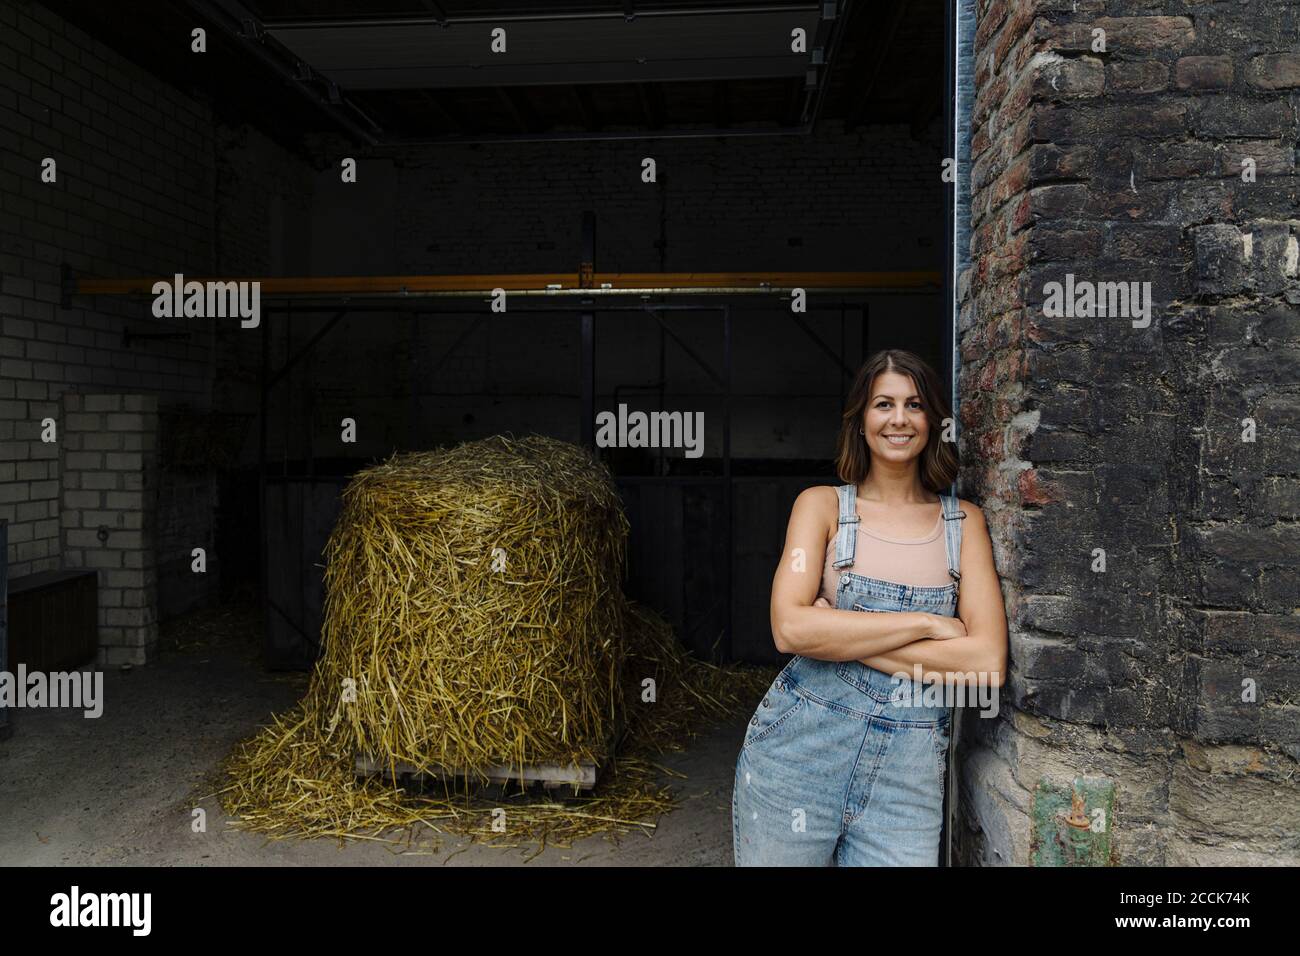 Retrato de una joven sonriente apoyada contra una pared de ladrillo en un granero en una granja Foto de stock